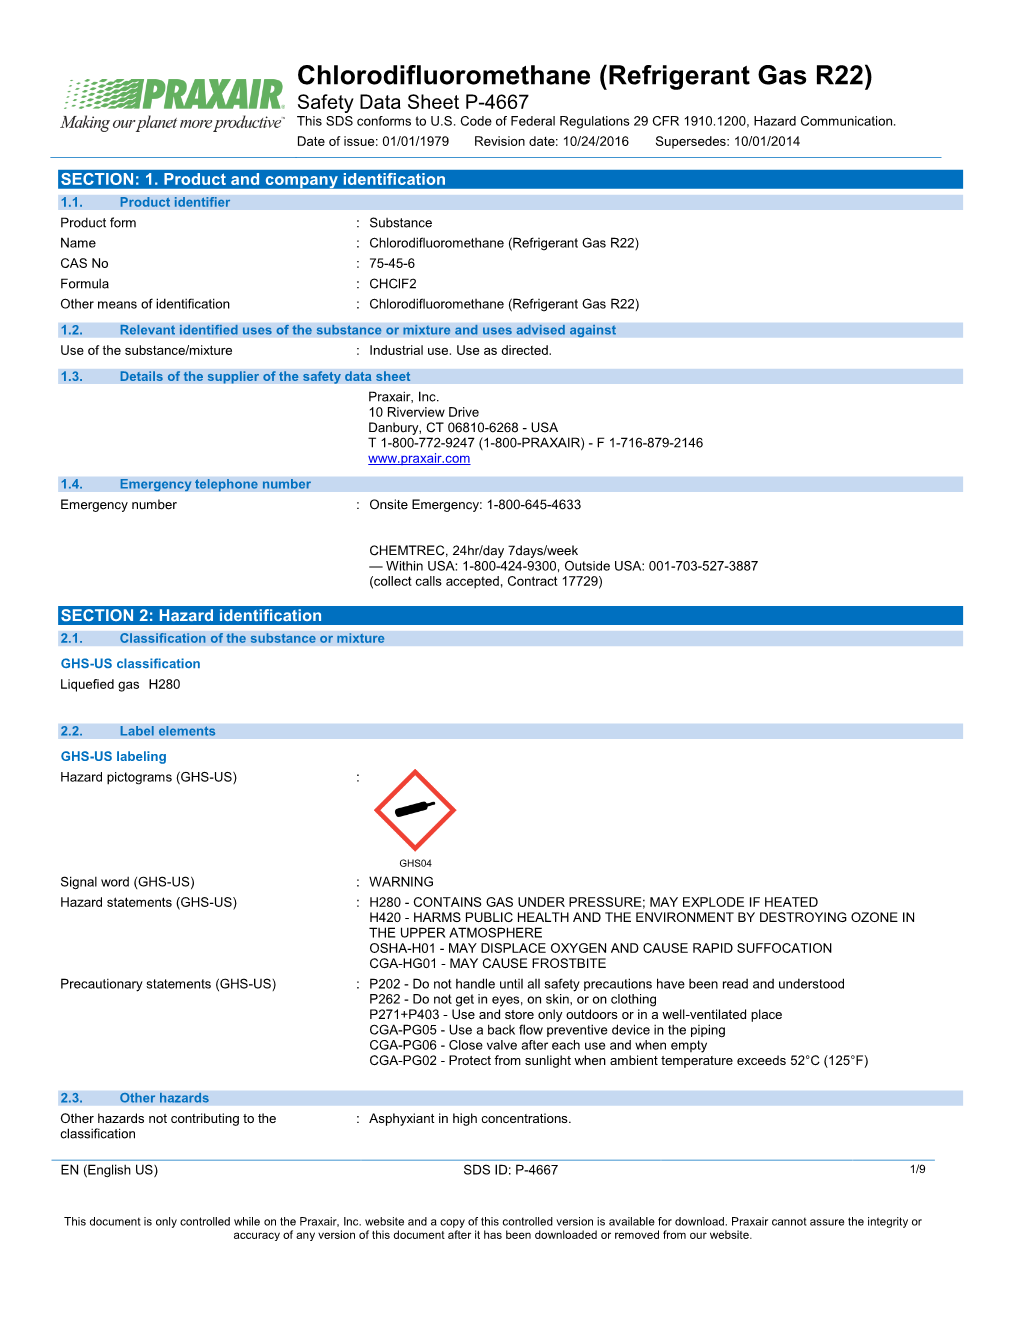 Chlorodifluoromethane (R22) Safety Data Sheet SDS P4667